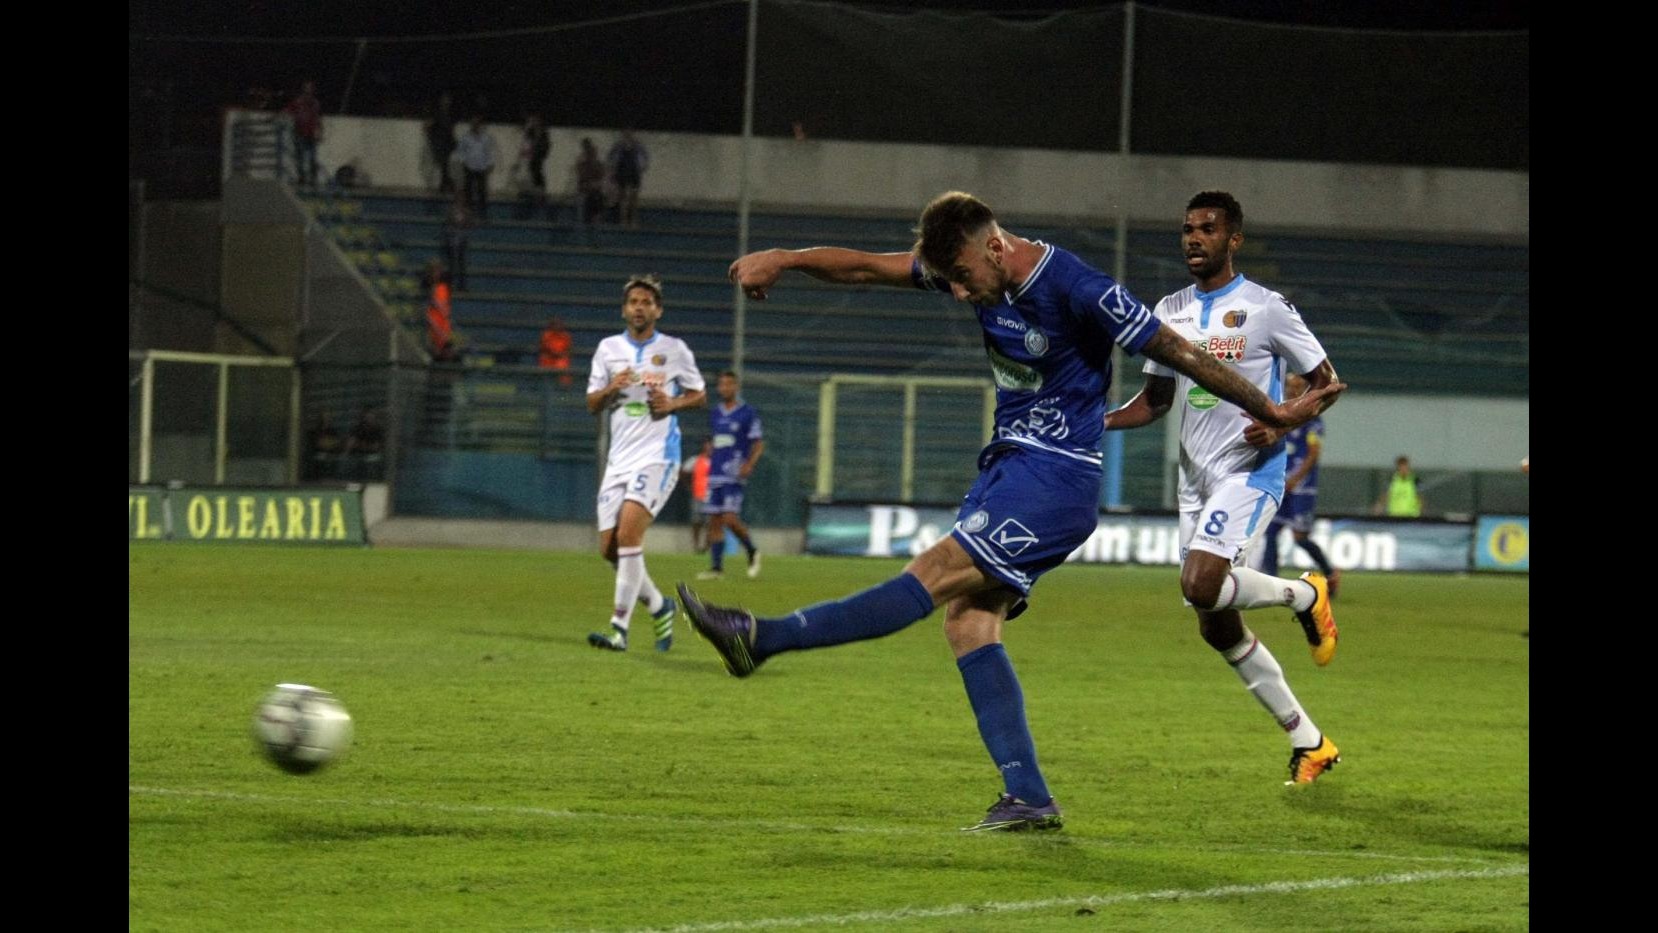 Lega Pro, Fidels Andria-Catania finisce 0-0